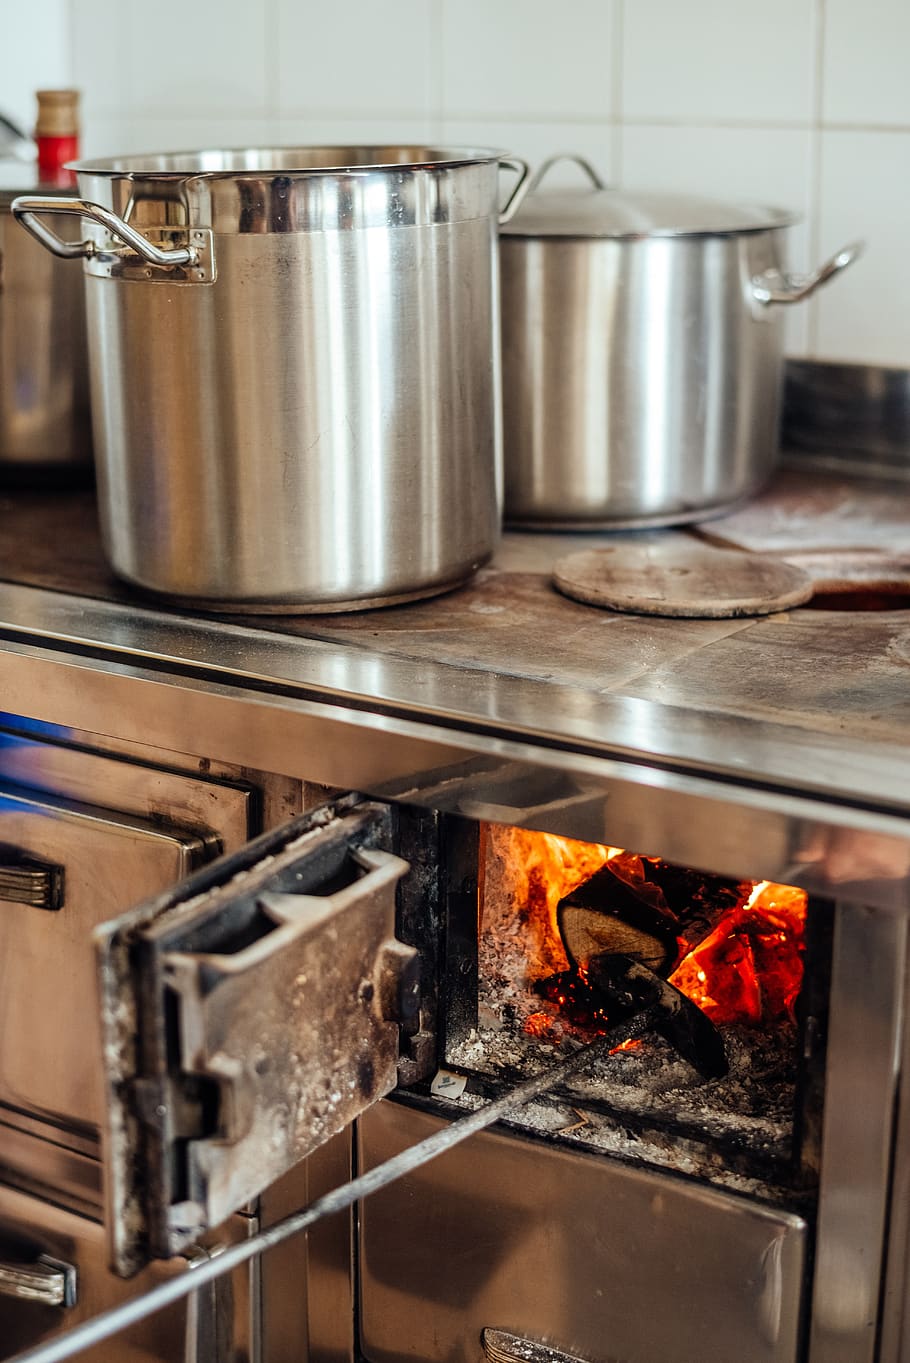 fuego de leña, cocinero, olla, estufa, viejo, horno, estufa de leña, chimenea, aparato, calor - temperatura